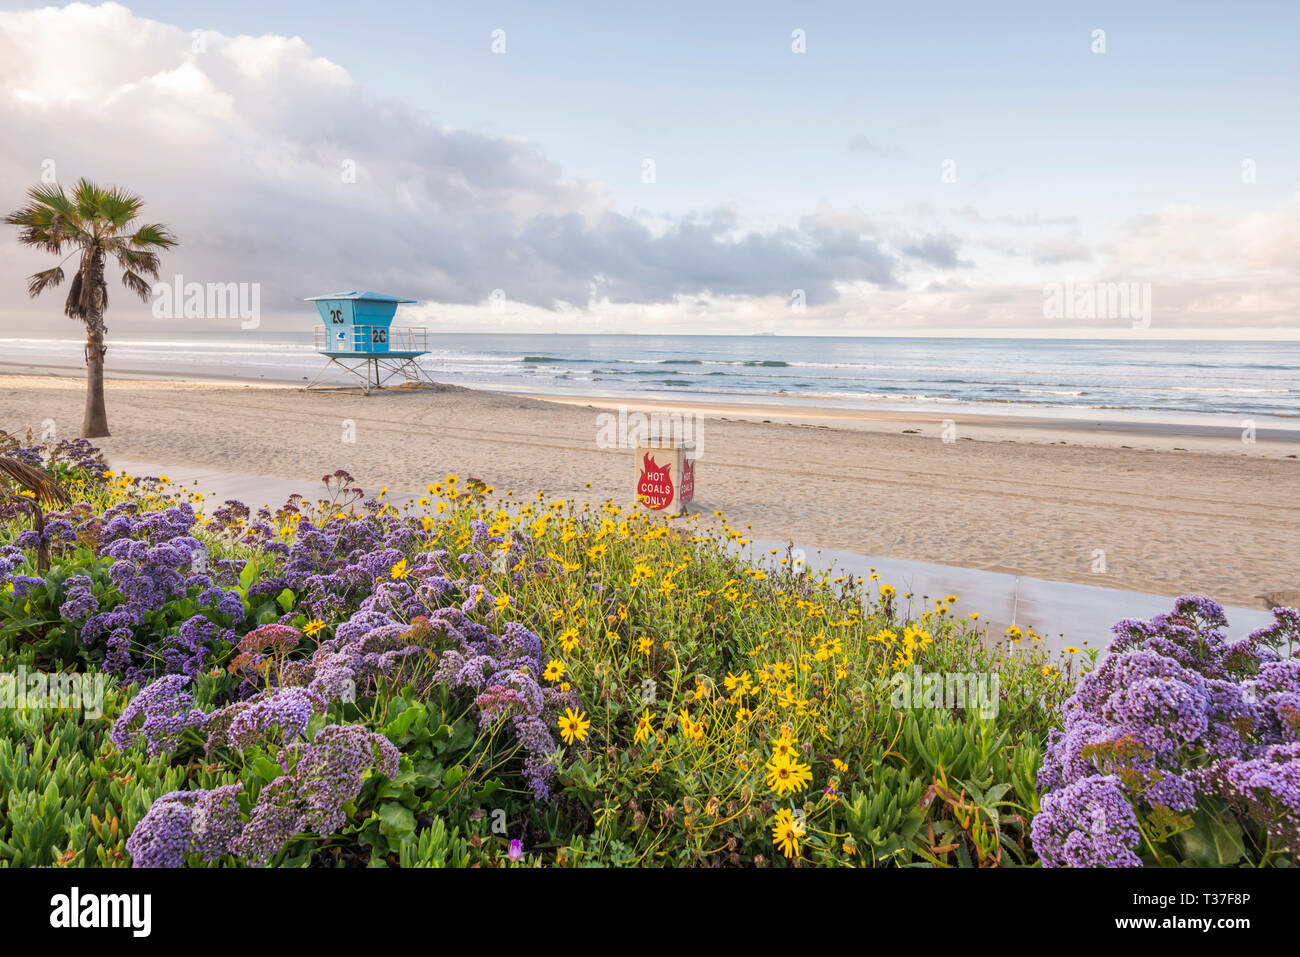 Coronado Central Beach. Coronado, California, USA. Stock Photo